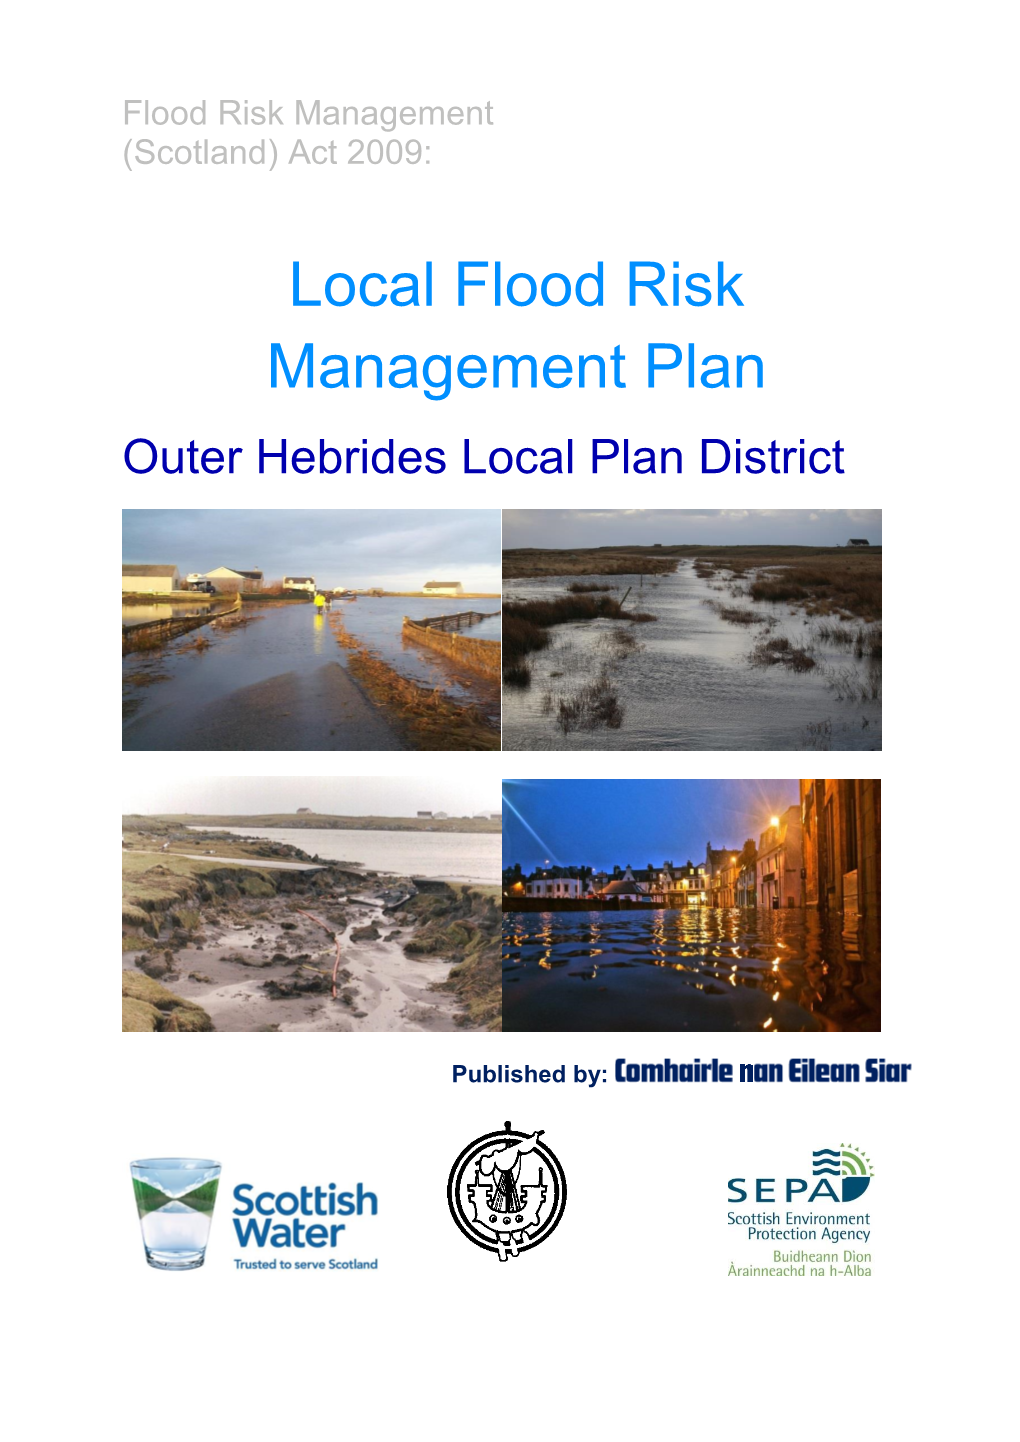 Outer Hebrides Local Flood Risk Management Plan